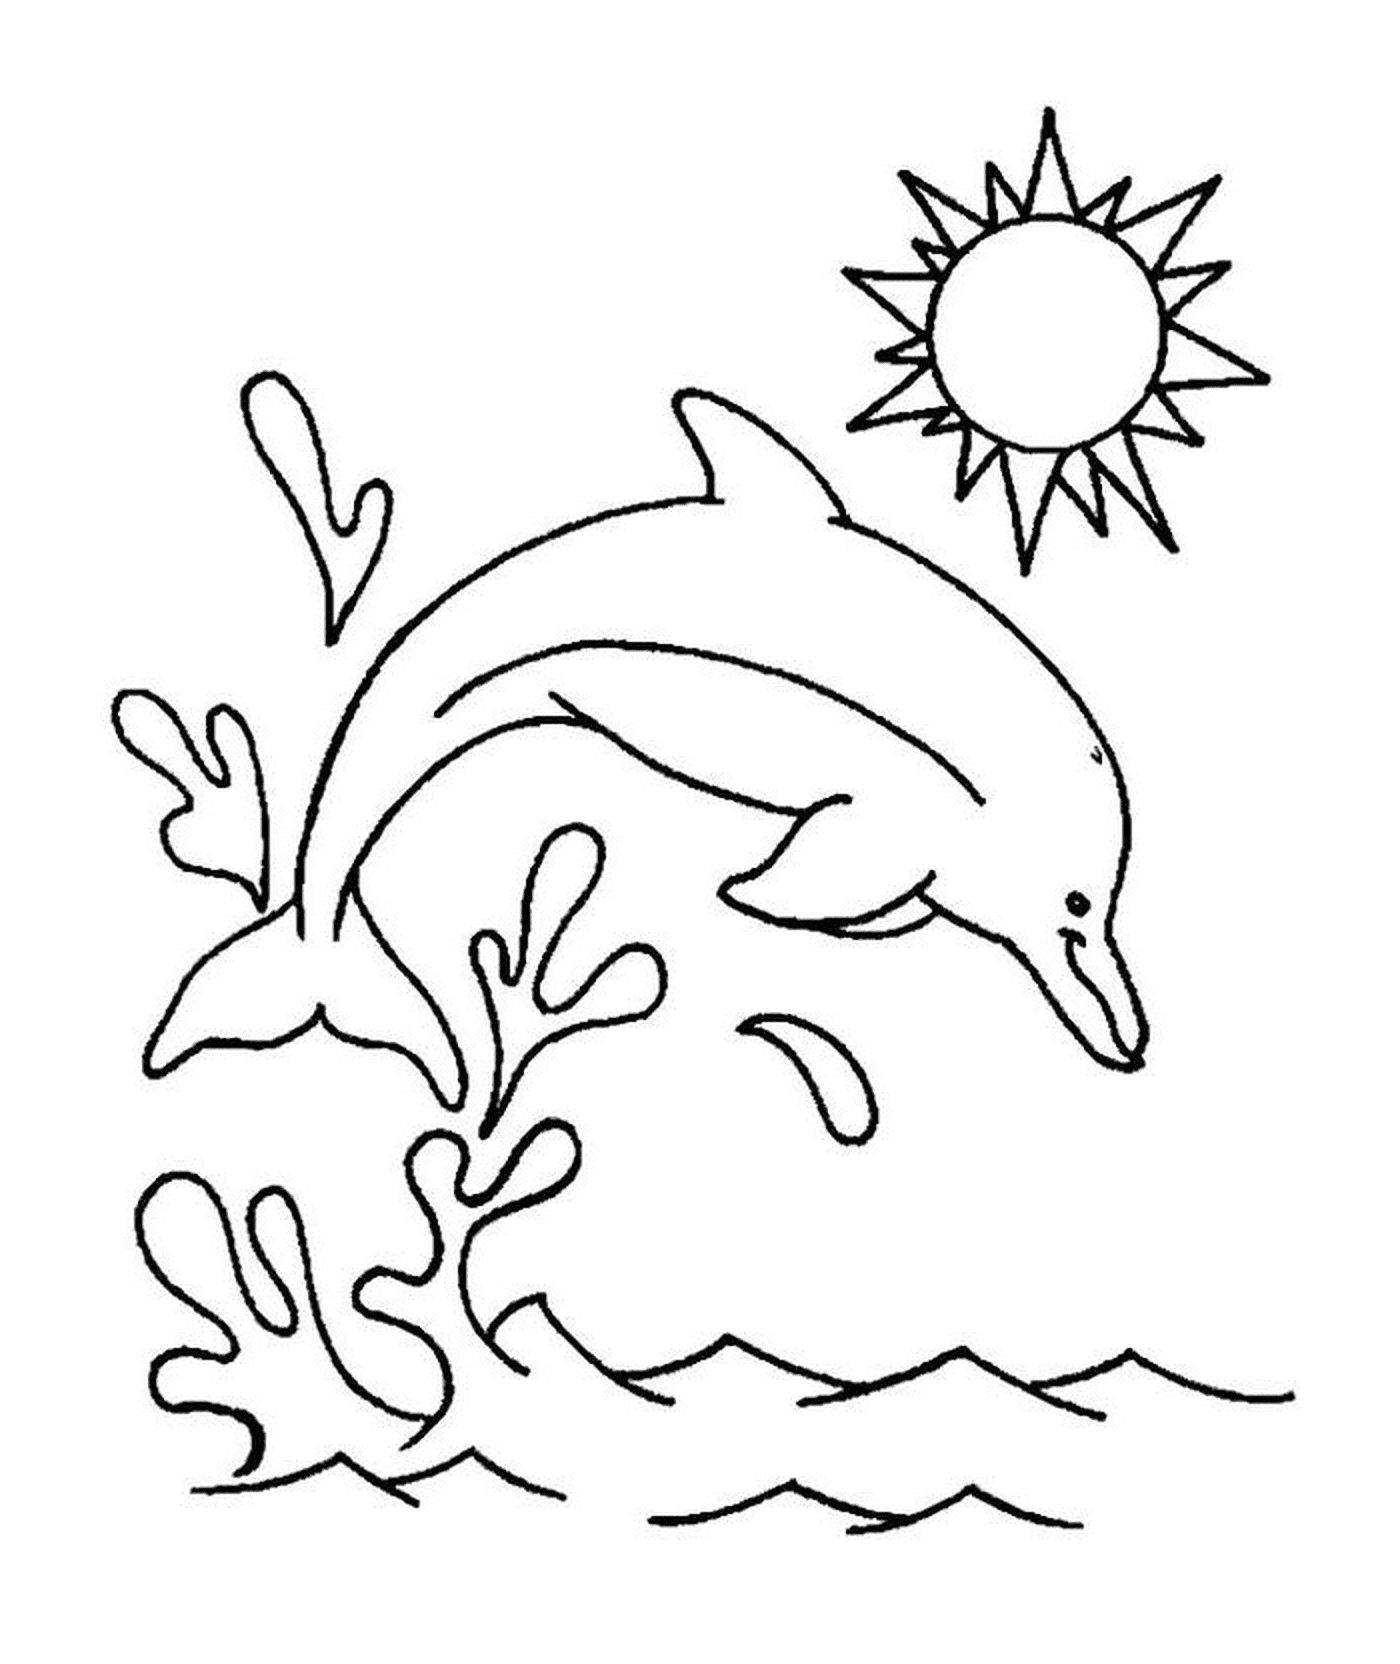  Delfintauchen im Wasser 